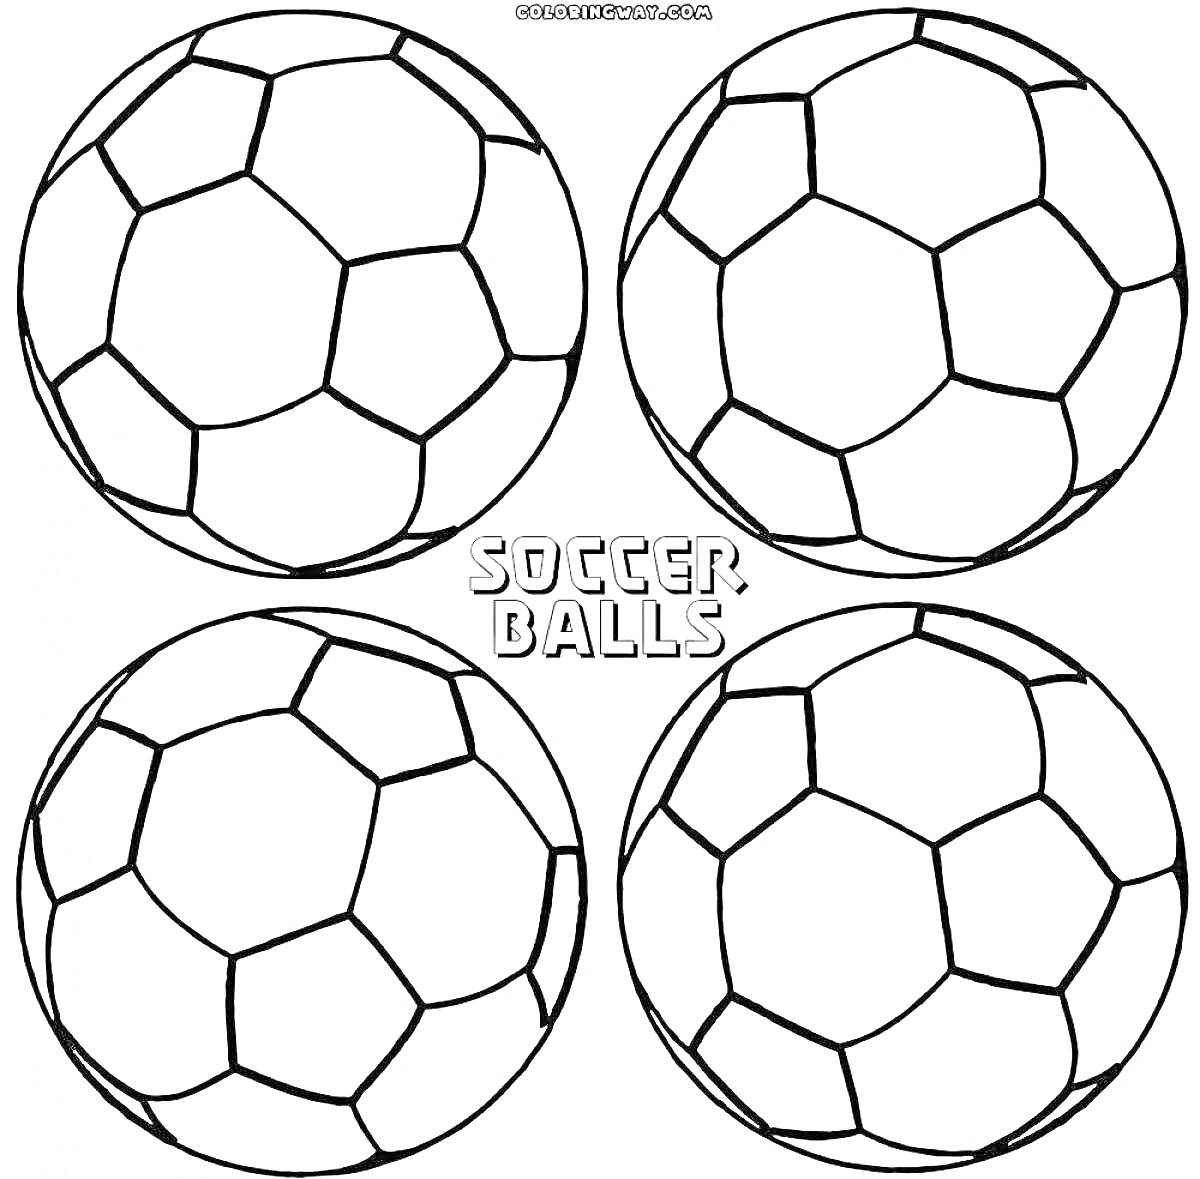 Раскраска четыре футбольных мяча с надписью 